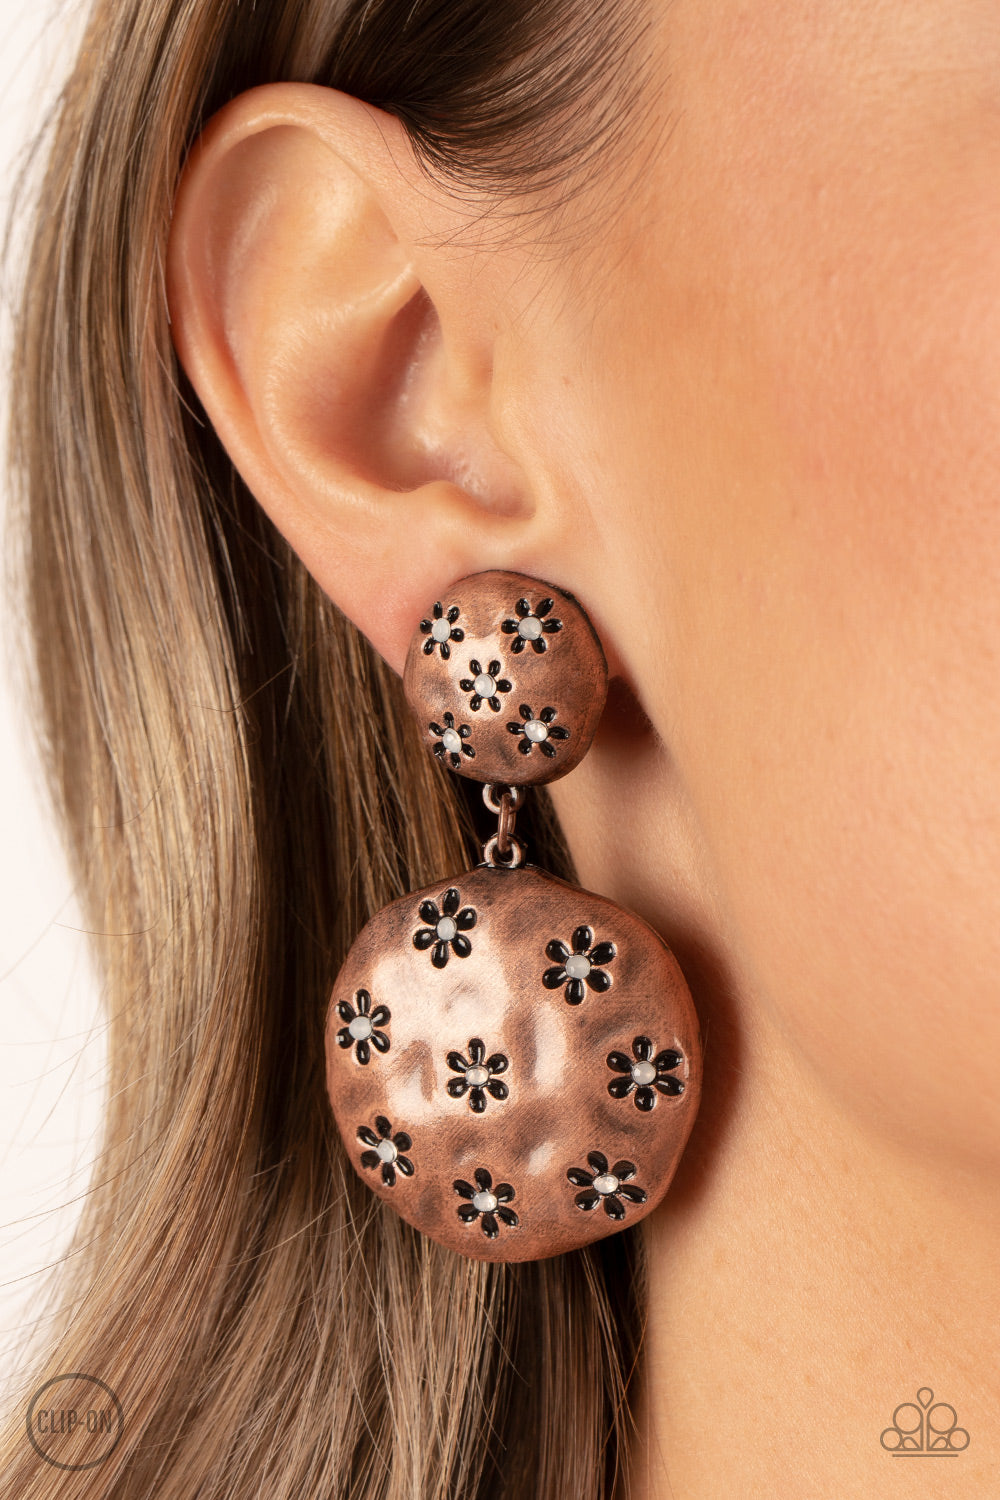 ​Industrial Fairytale - copper - Paparazzi CLIP ON earrings